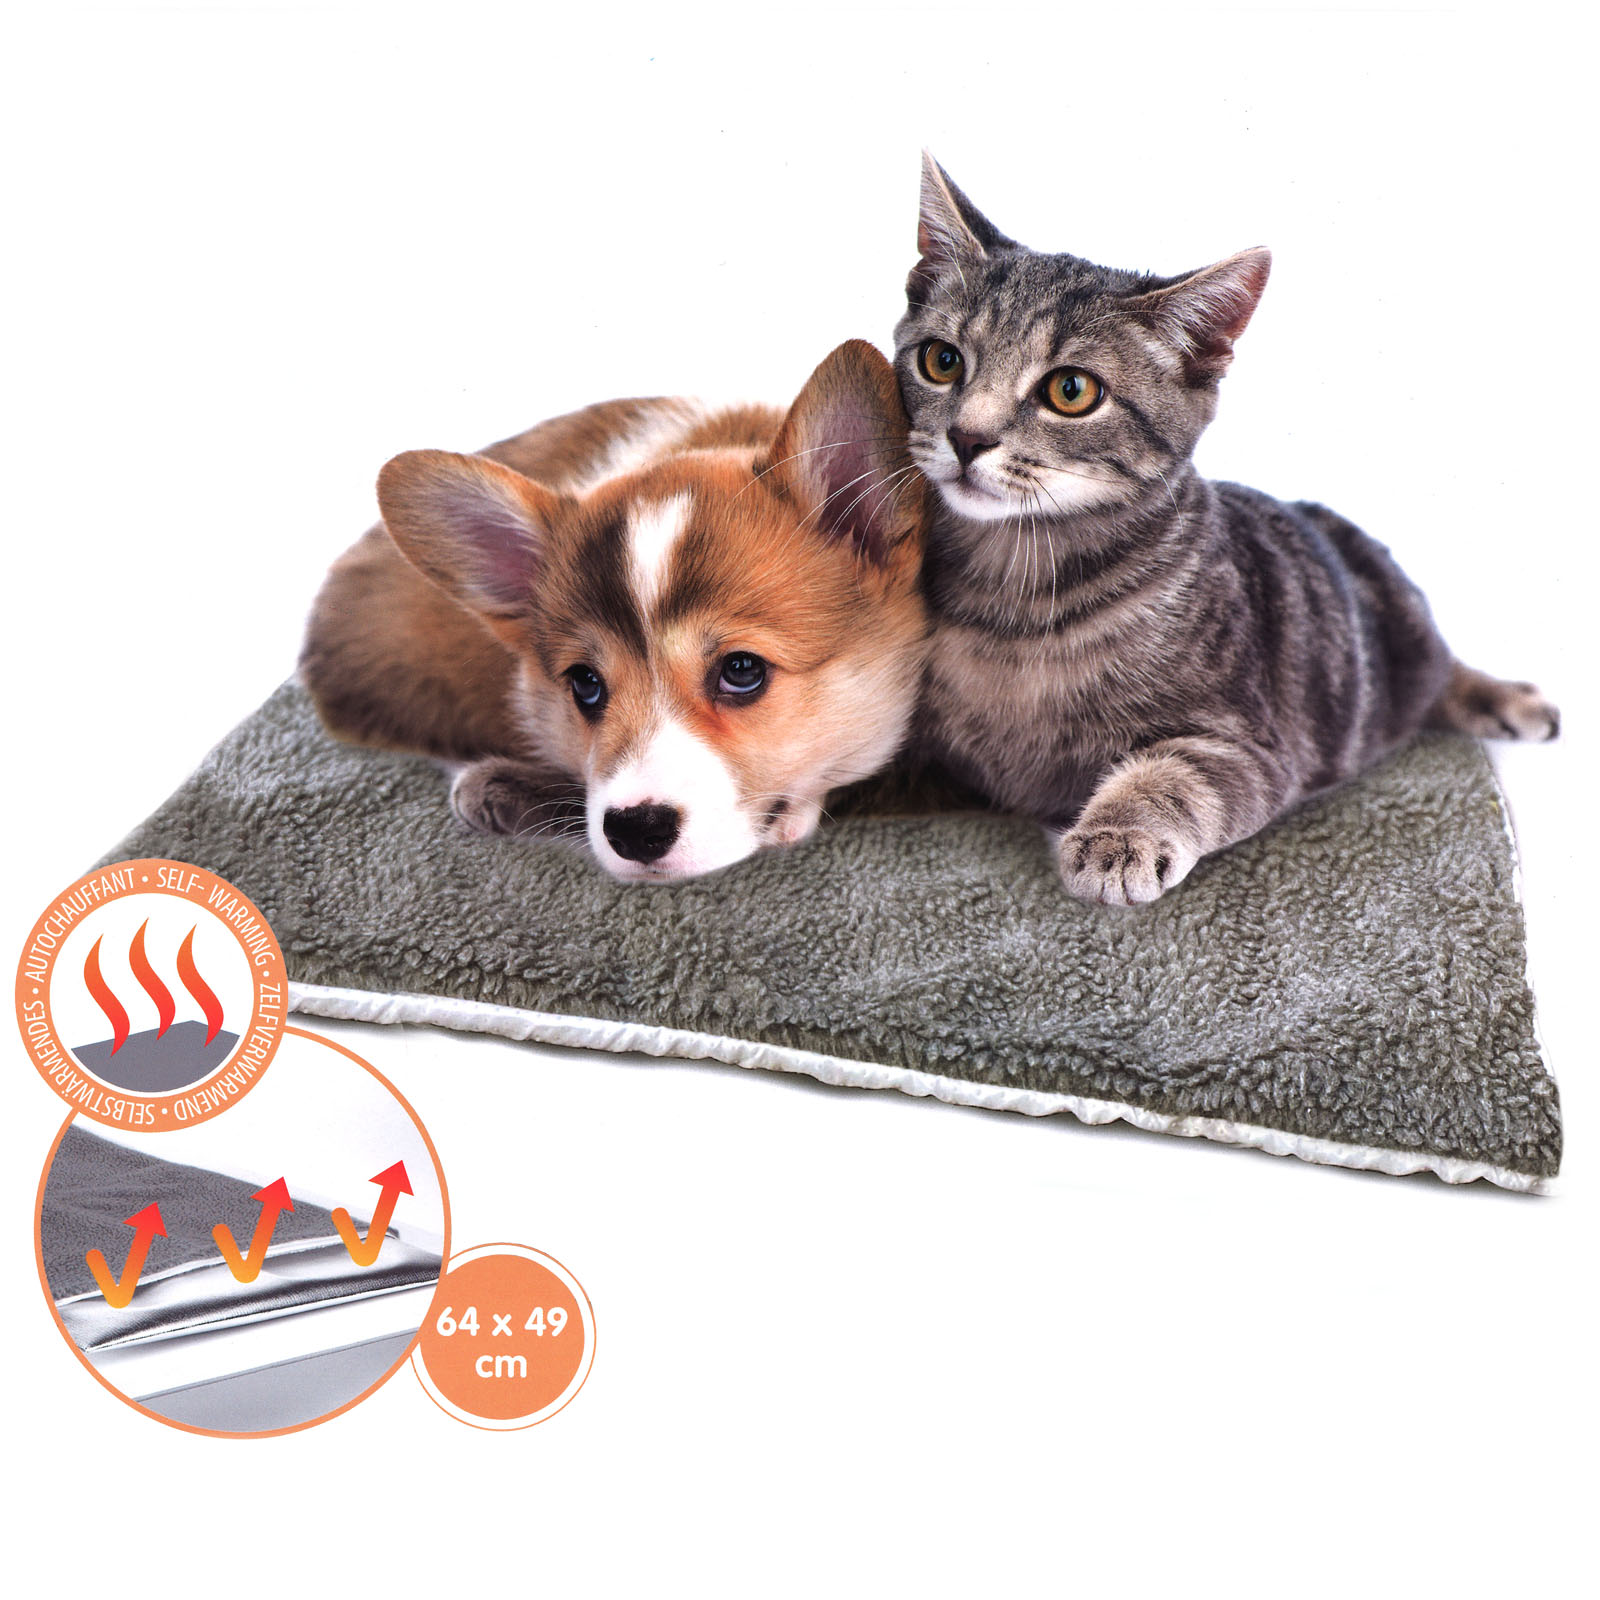 Tutto sul tappetino autoriscaldante per cani e gatti - ArcaMagazine